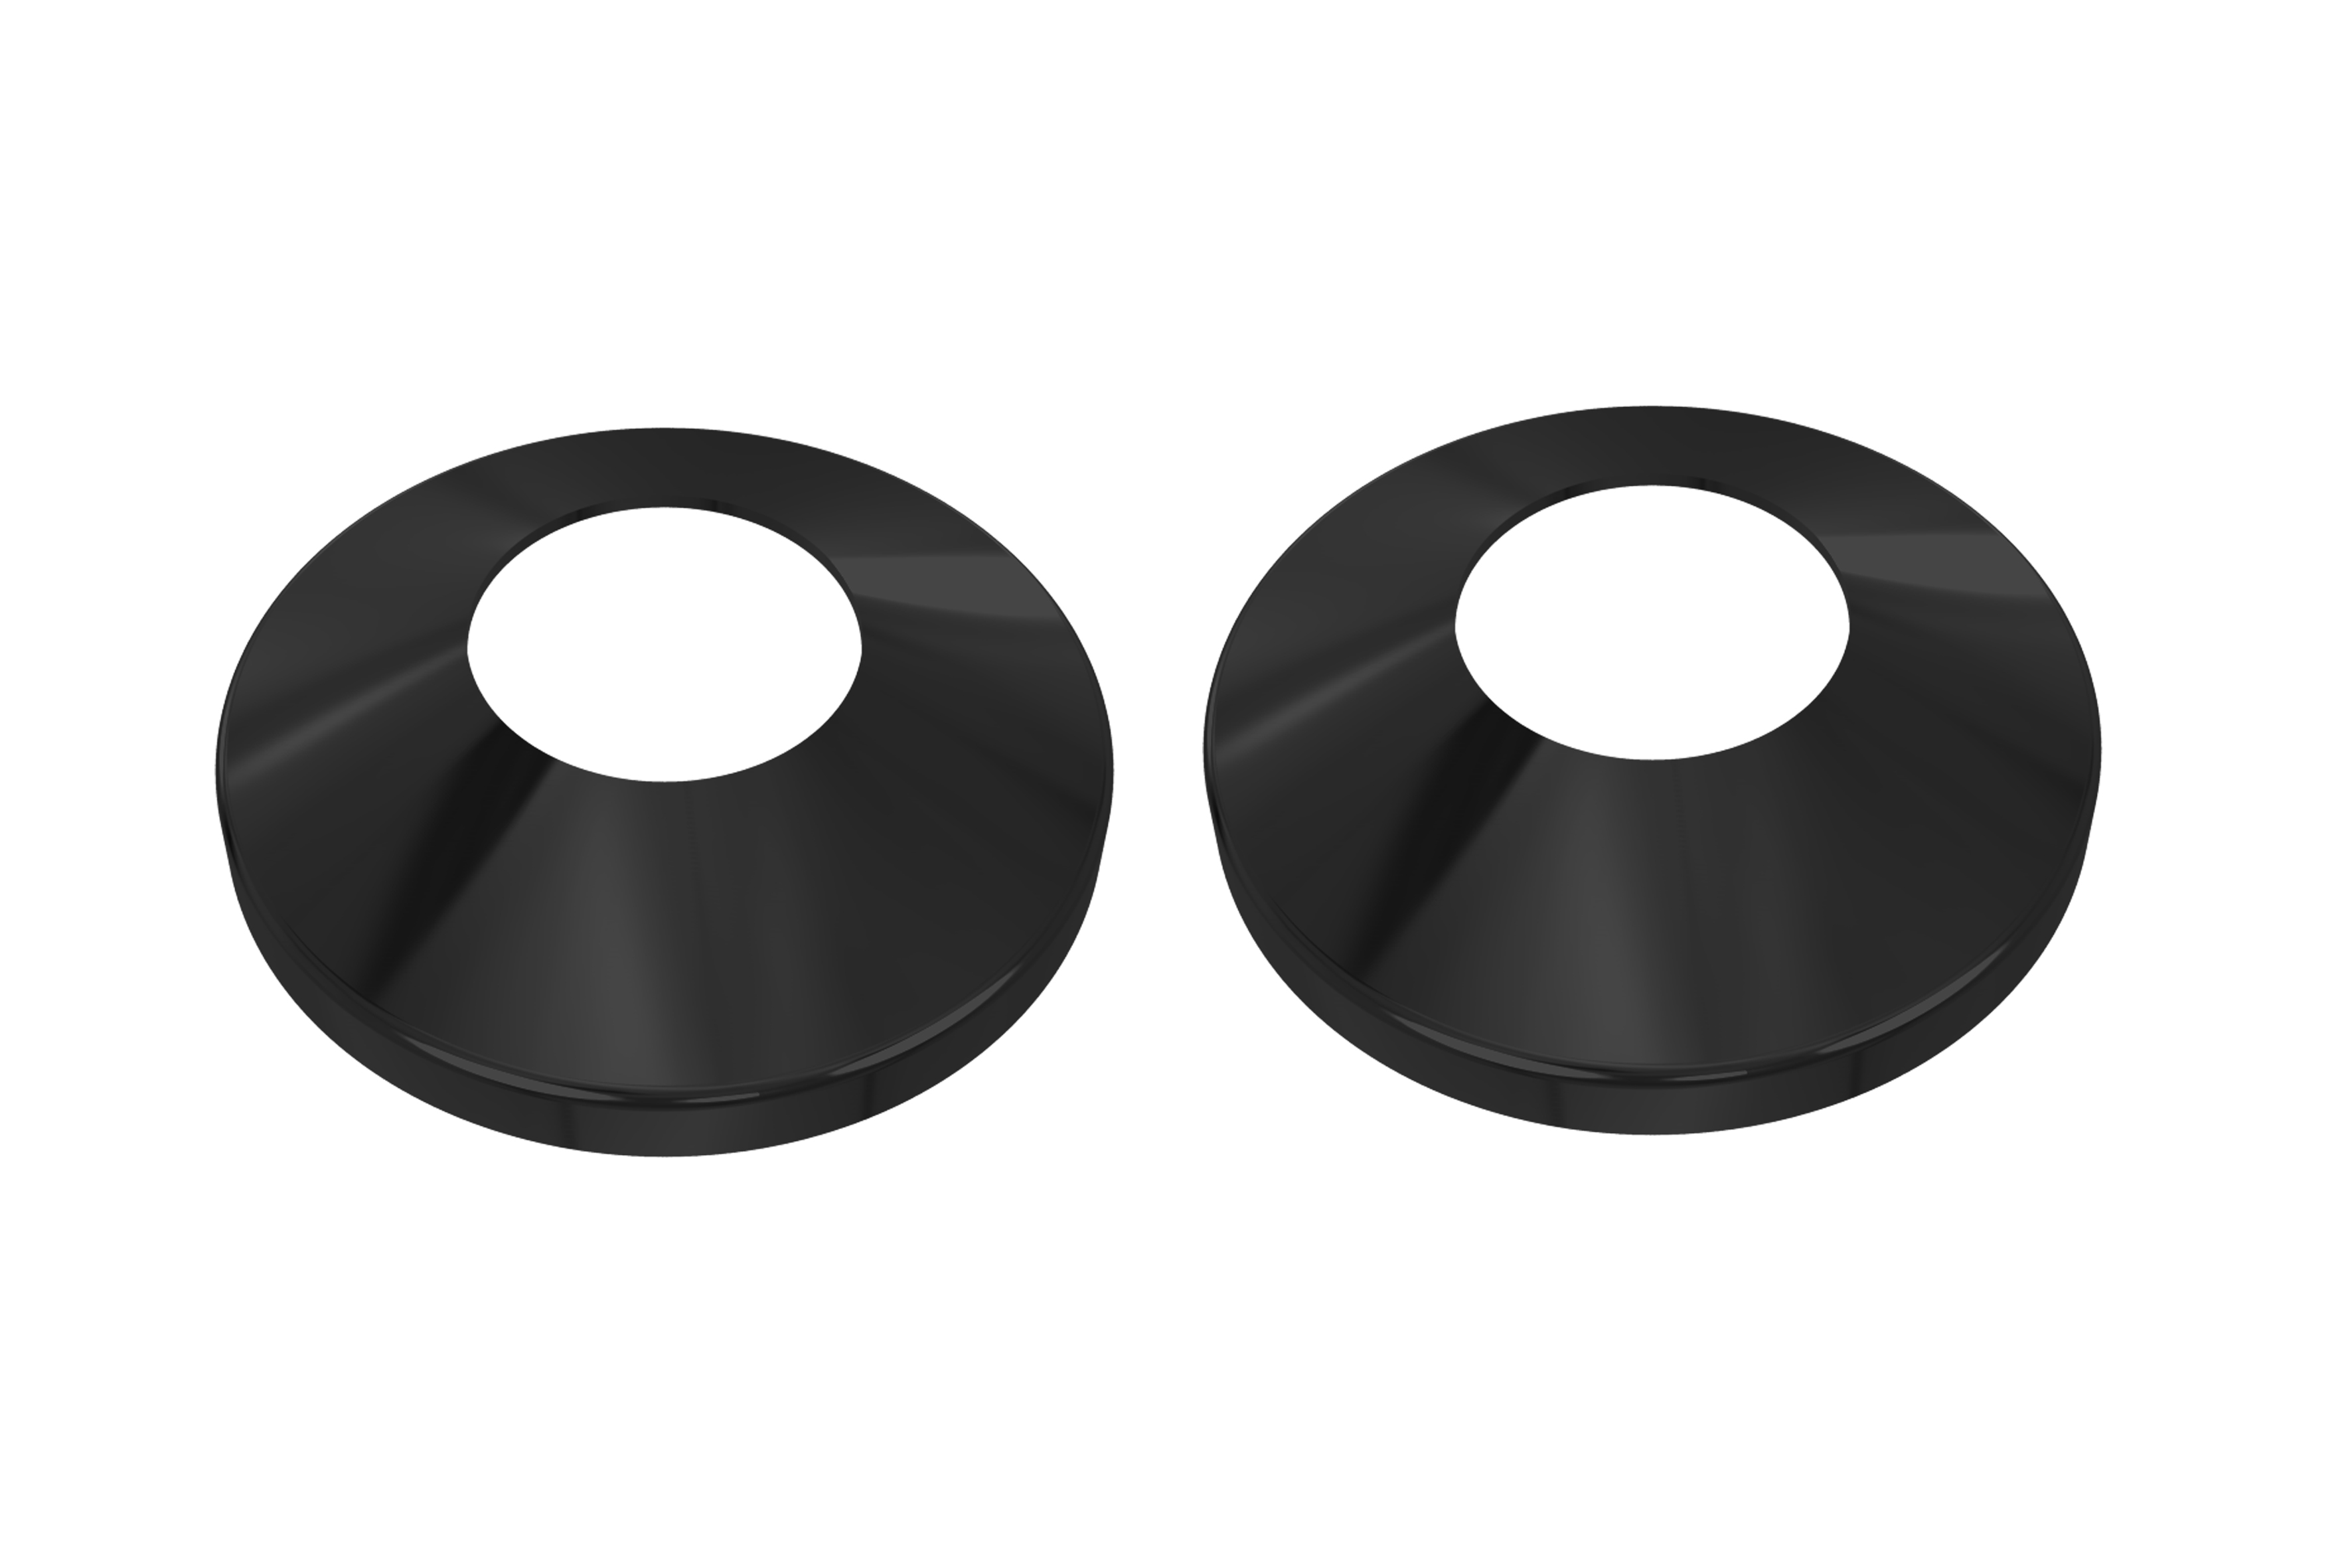 Комплект подключения 2шт.: уголок со сгоном 3/4х1/2, эксцентрик, отражатель, цвет черный муар AQ 3020BL - 2